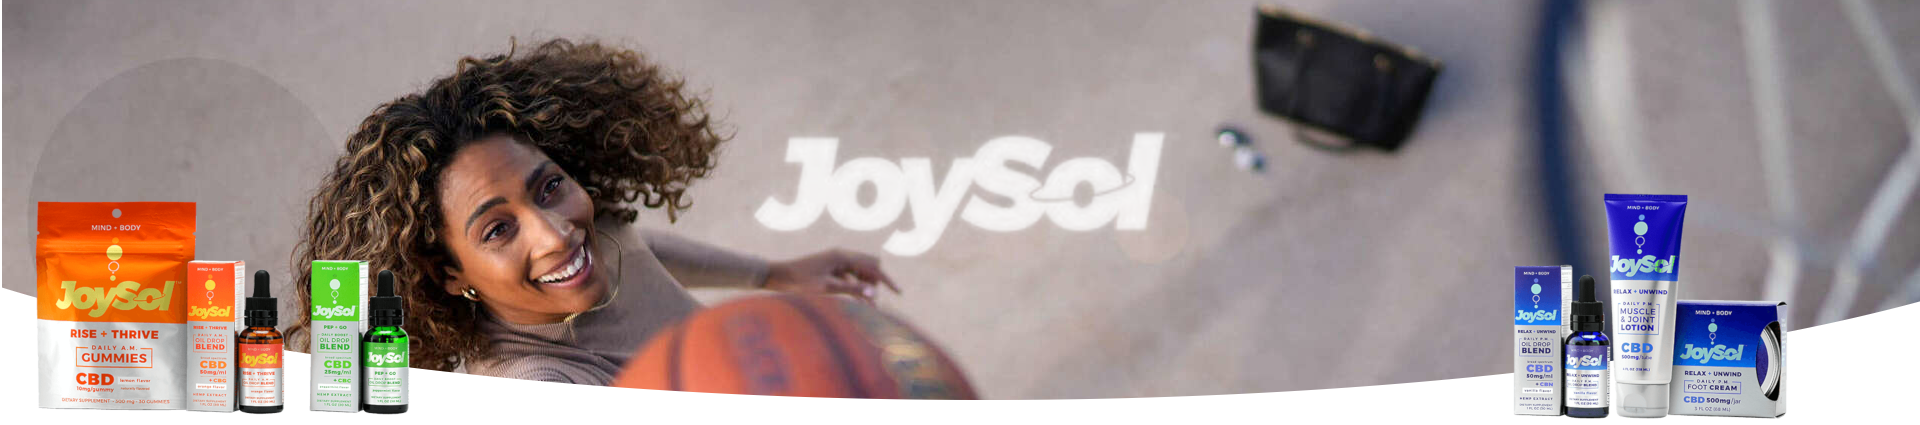 JoySol